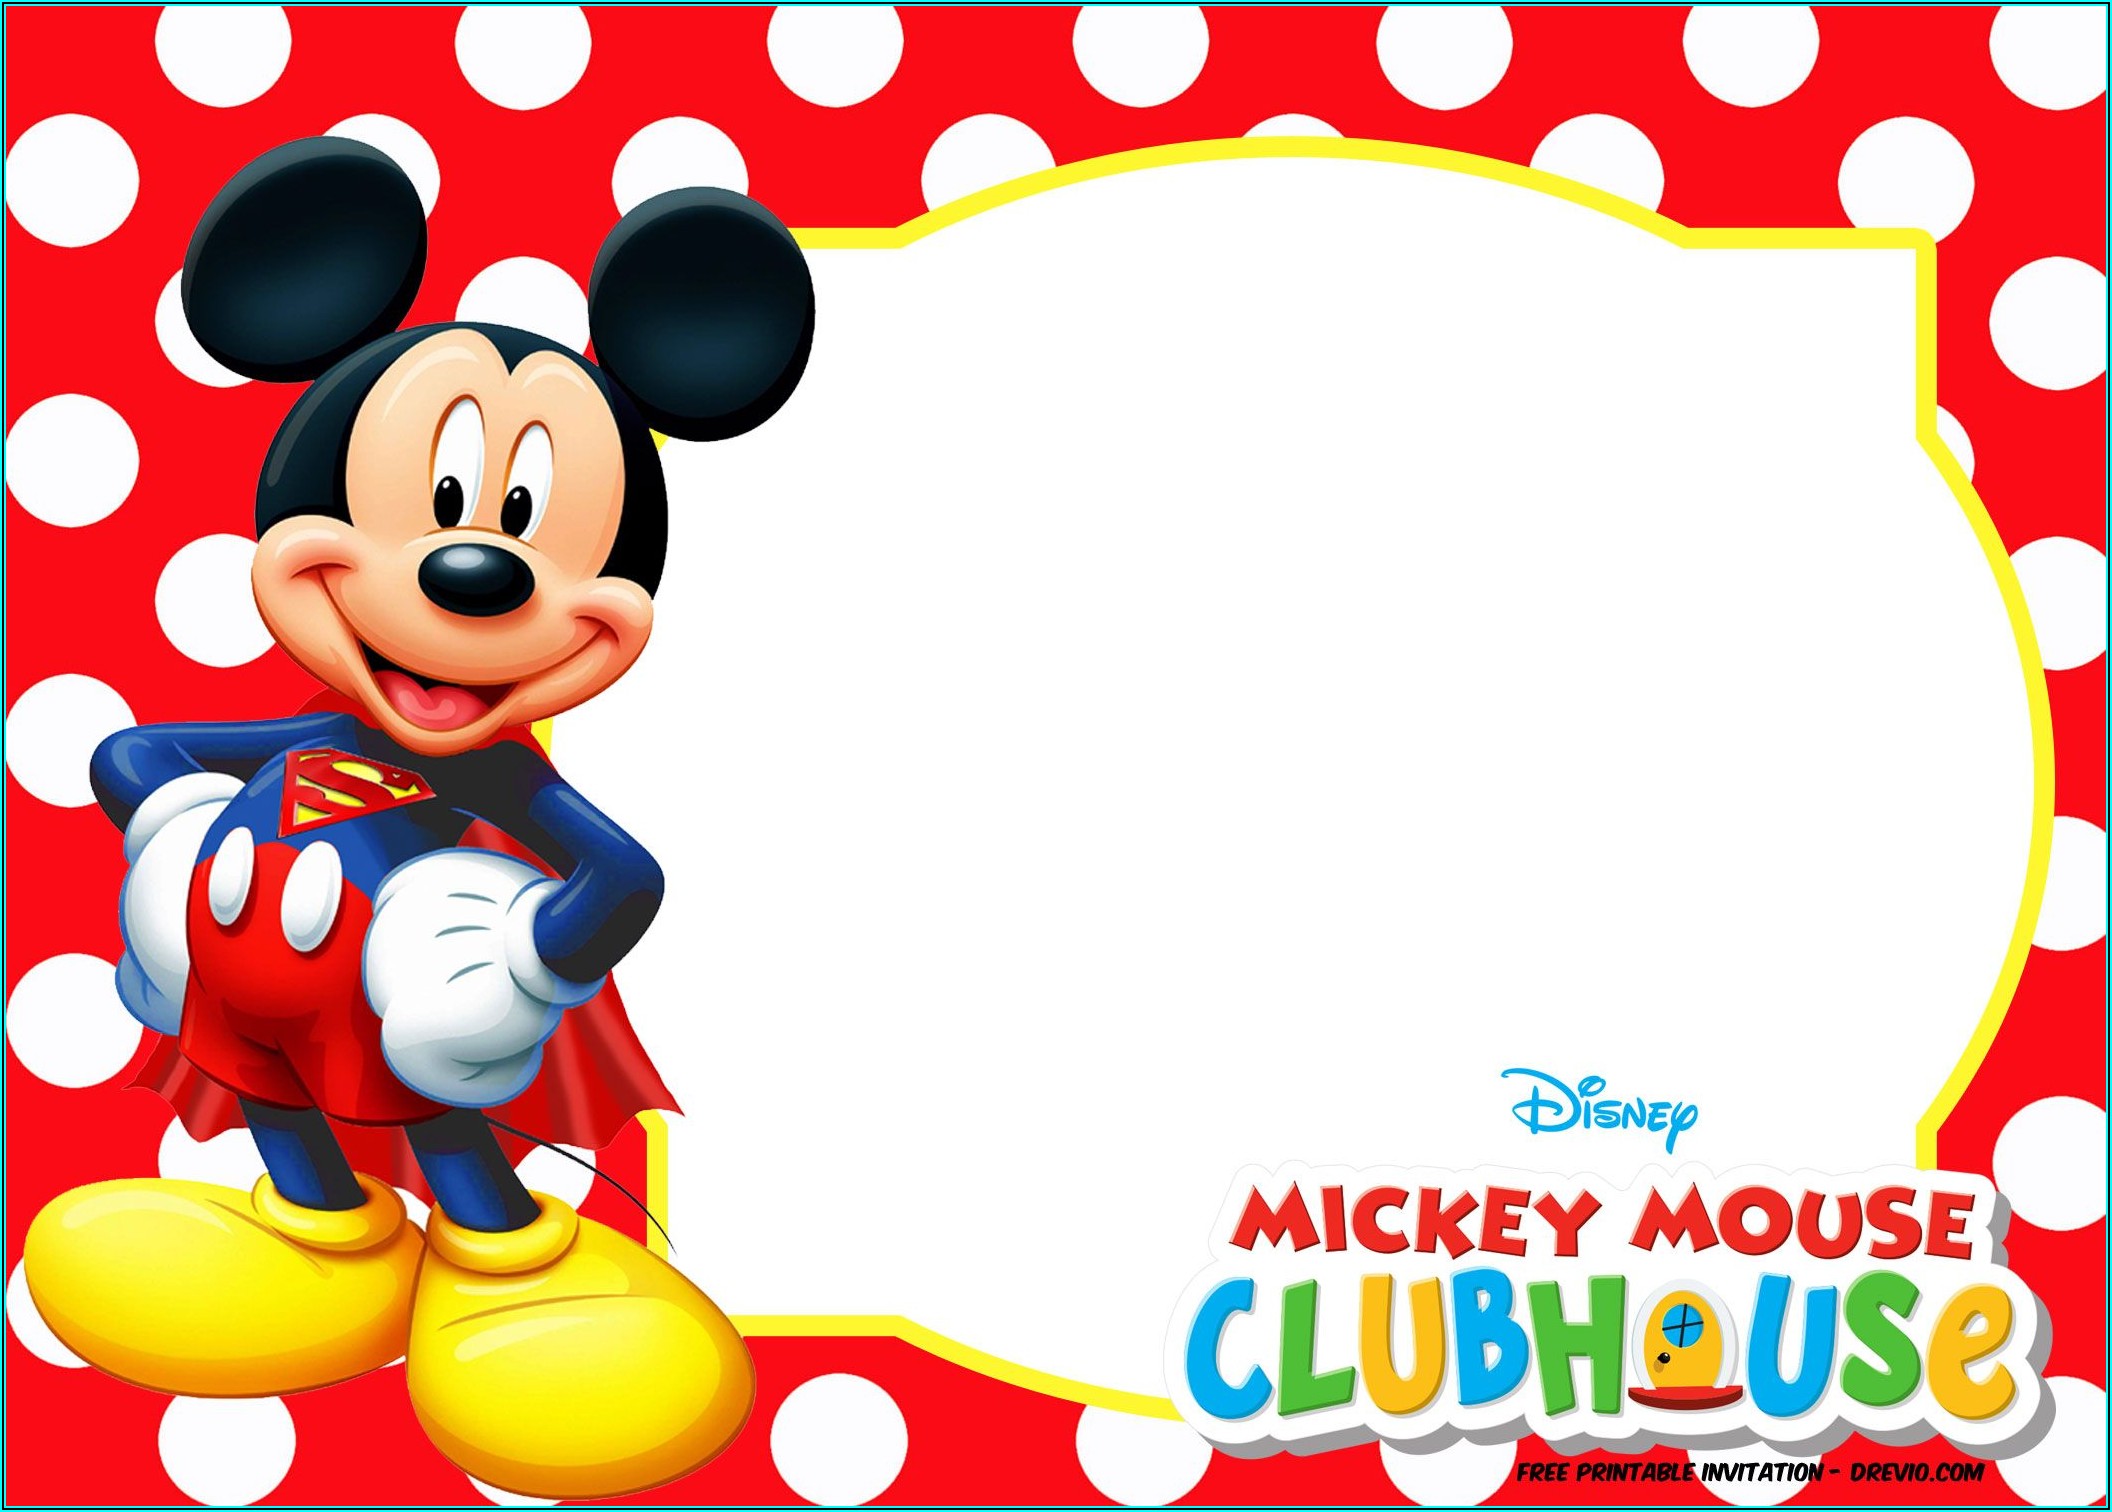 Mickey Birthday Invitation Templates